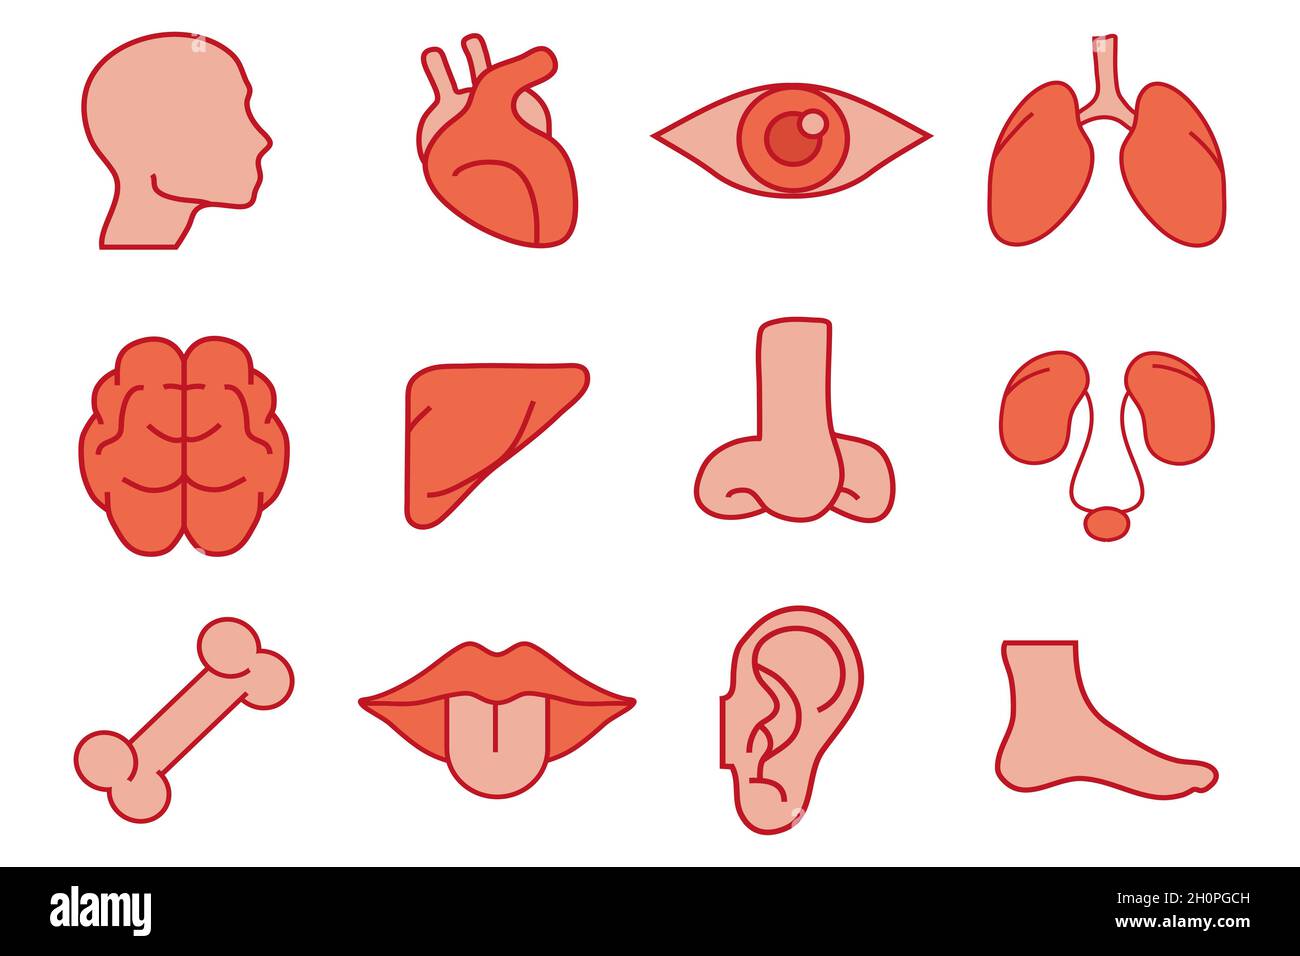 Menschliche Organe Eingestellt. Innere Organe. Von Hand gezeichnet - Gehirn, Auge, Lunge, Herz, Leber, Nase, weibliches Fortpflanzungssystem, Bein, Mund, Ohr, Knochen. Menschliches Biolog Stock Vektor